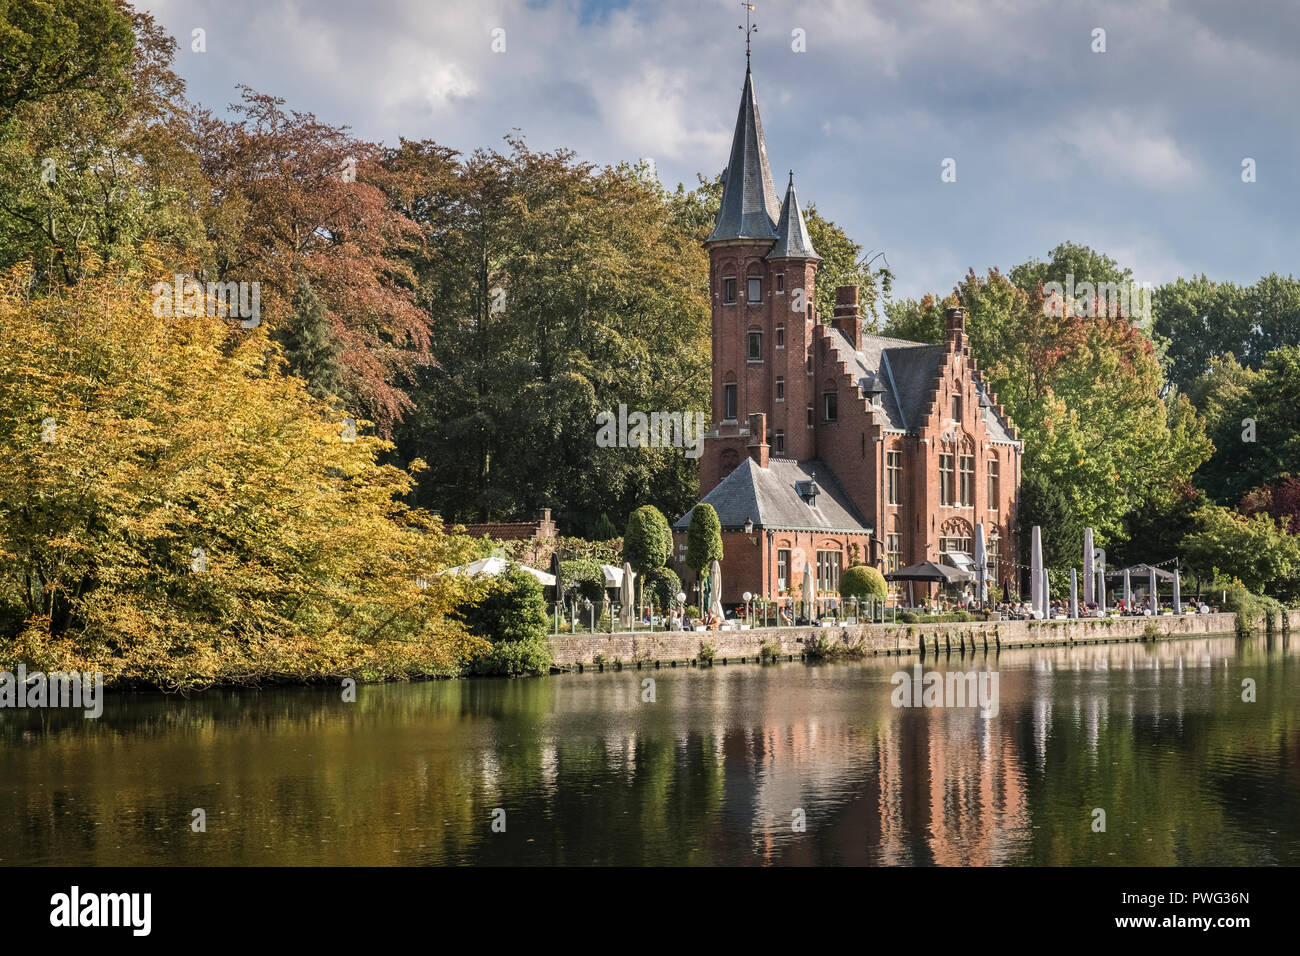 Castello de la faille, un ristorante nel suggestivo scenario del Parco Minniewater, un piccolo parco e giardino in Bruges, Fiandre, in Belgio Foto Stock